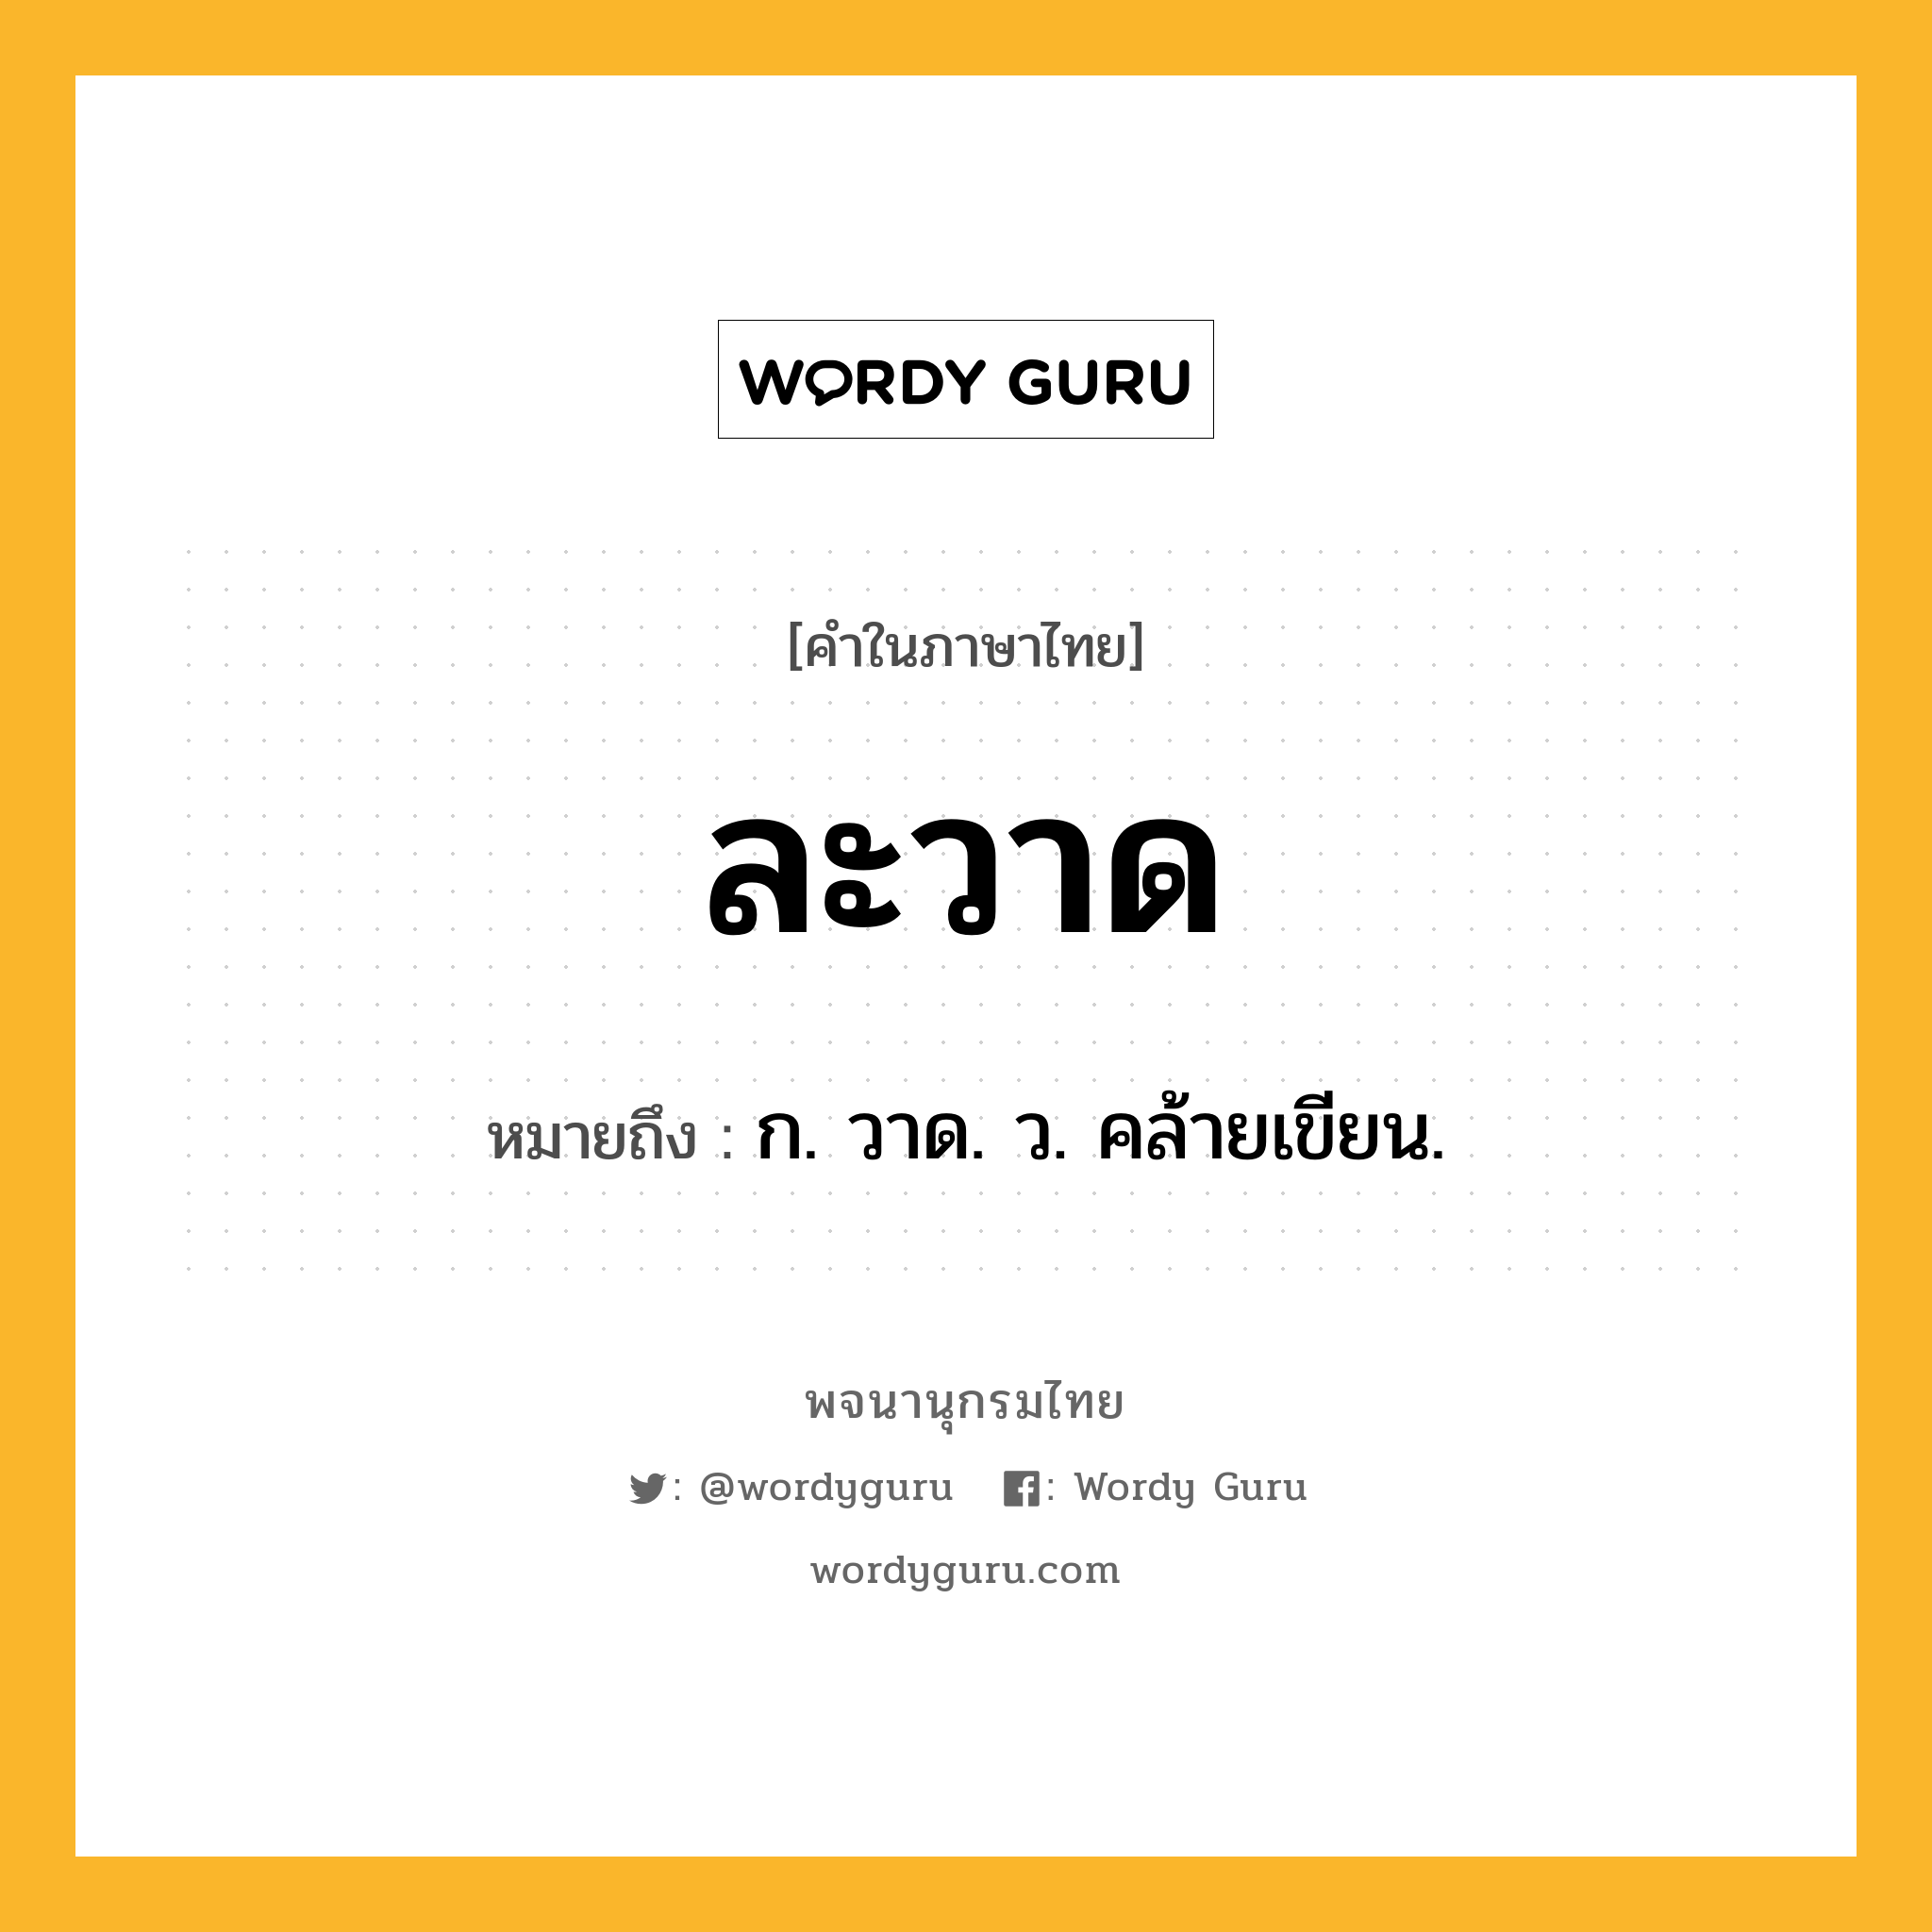 ละวาด หมายถึงอะไร?, คำในภาษาไทย ละวาด หมายถึง ก. วาด. ว. คล้ายเขียน.